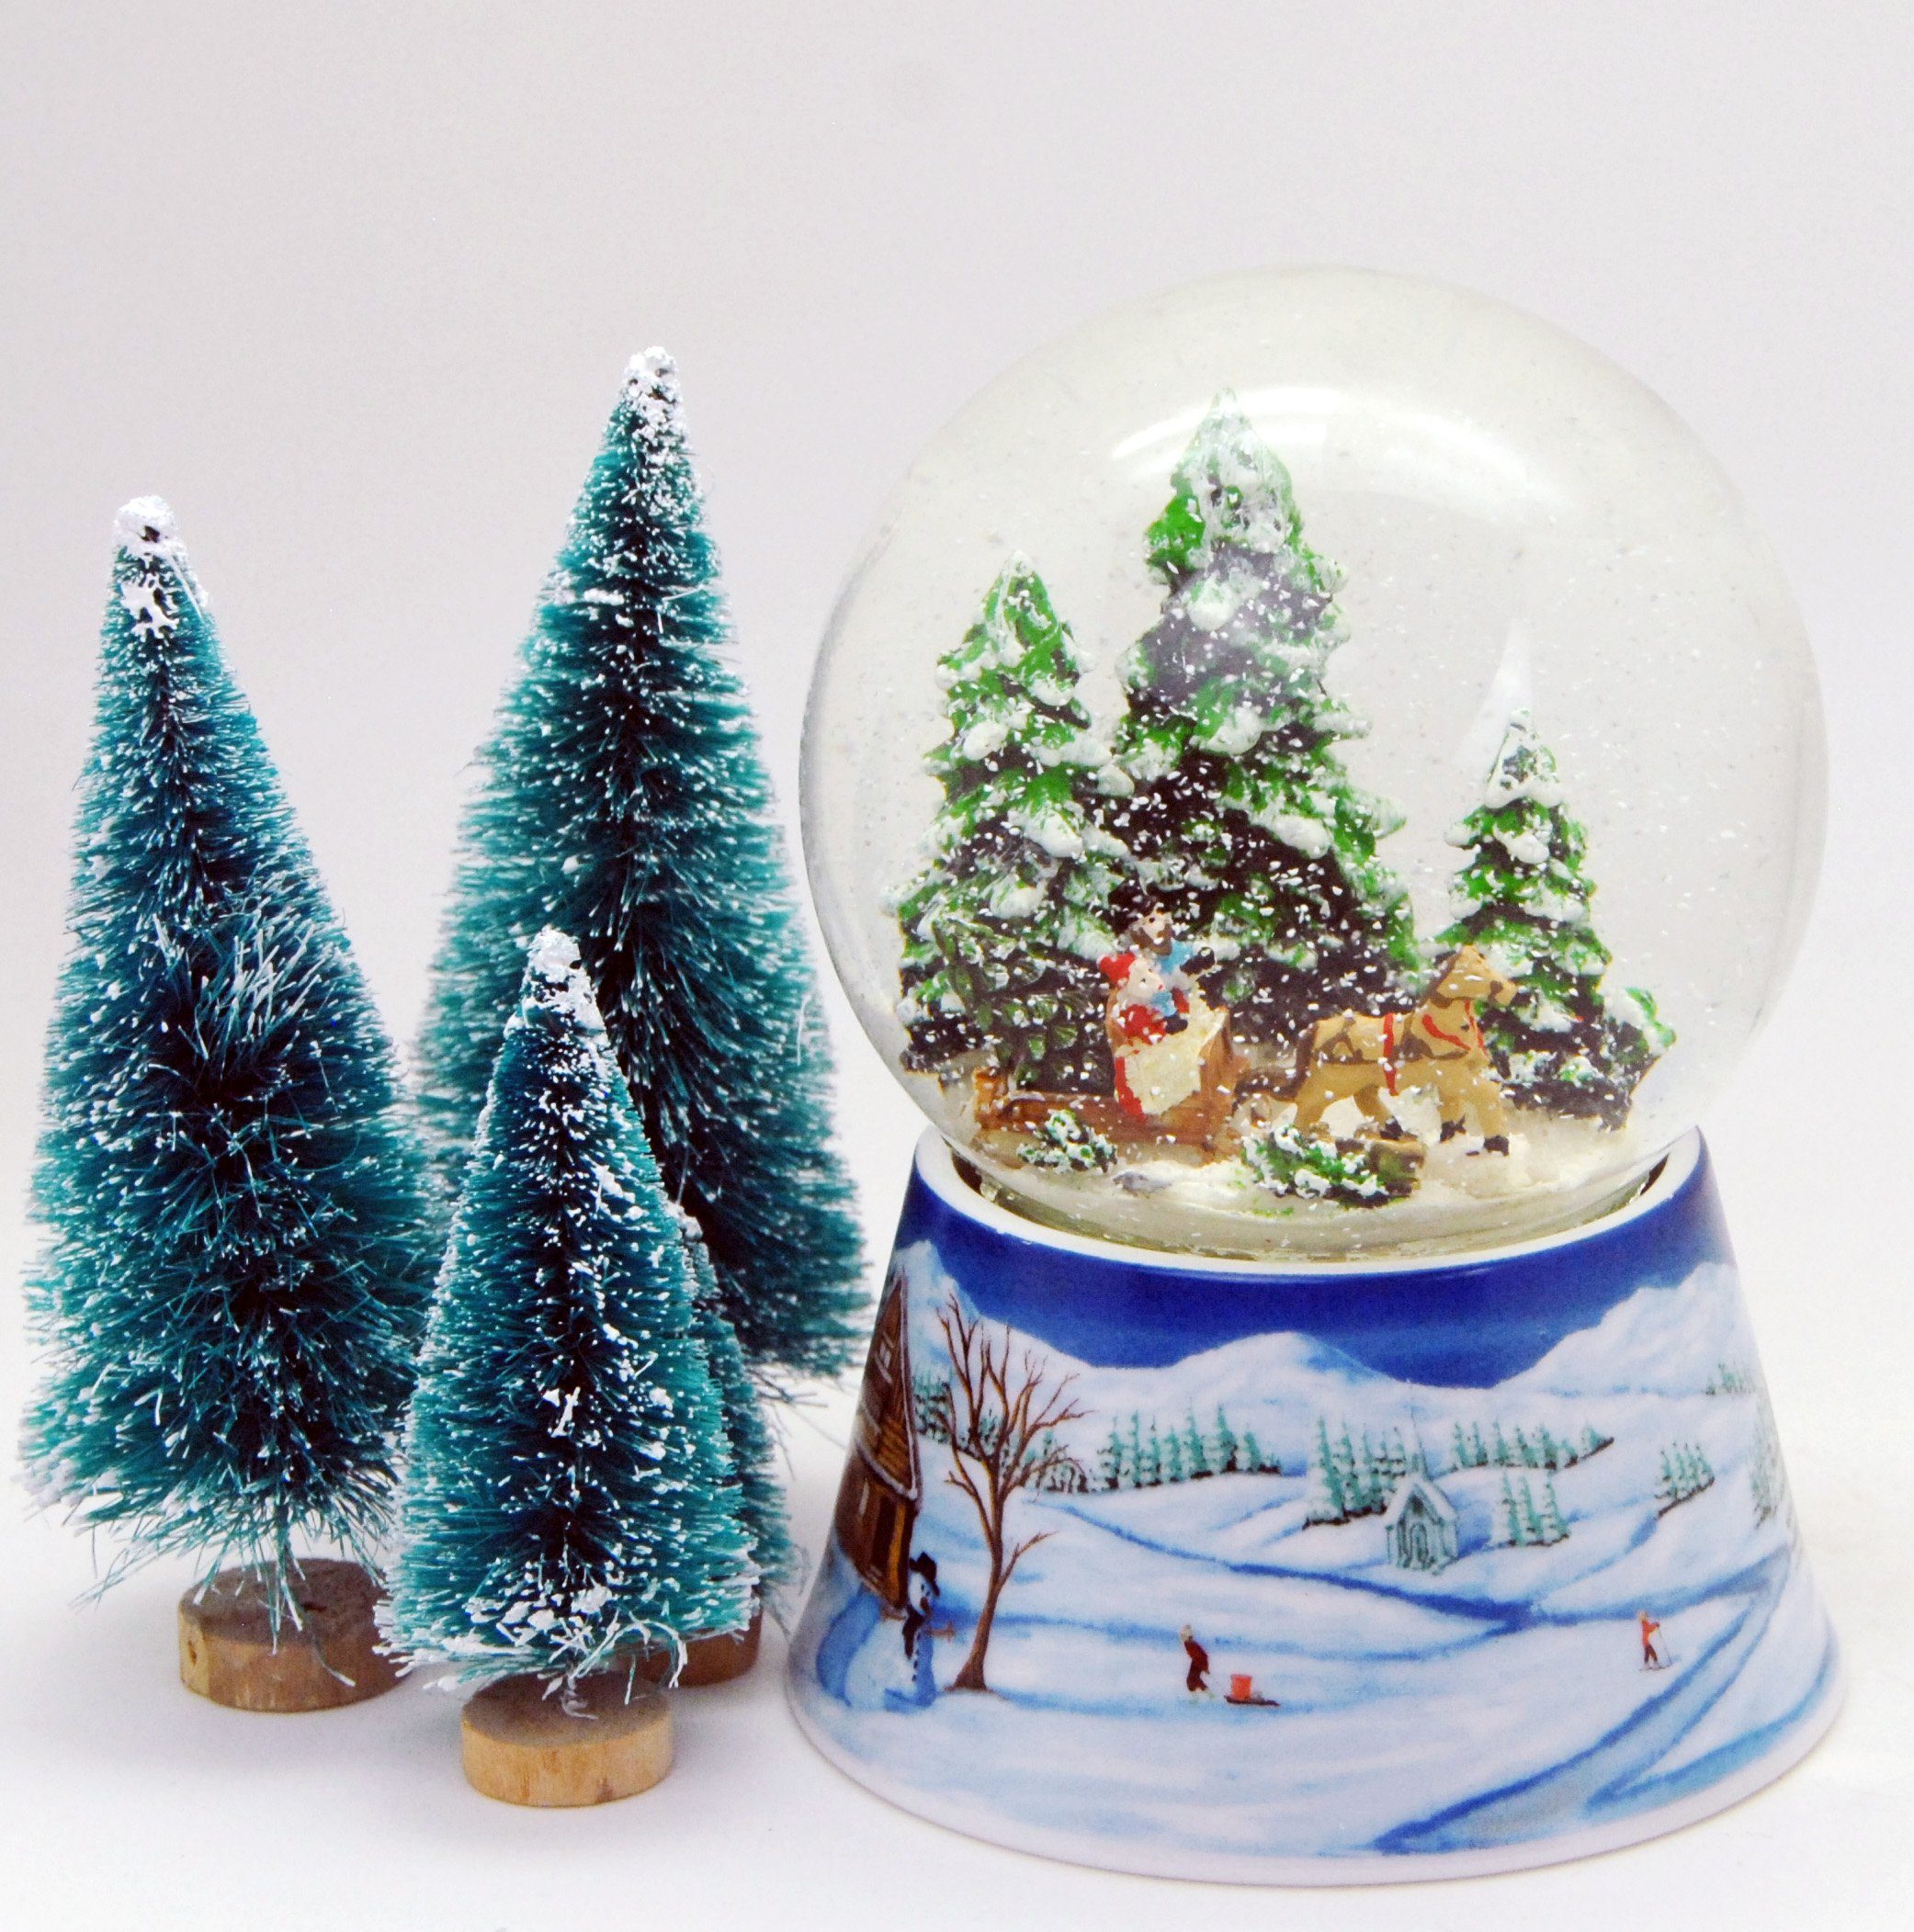 Schlittenfahrt 10cm MINIUM-Collection holen breit Spieluhr Weihnachten Weihnachtsbaum Schneekugel